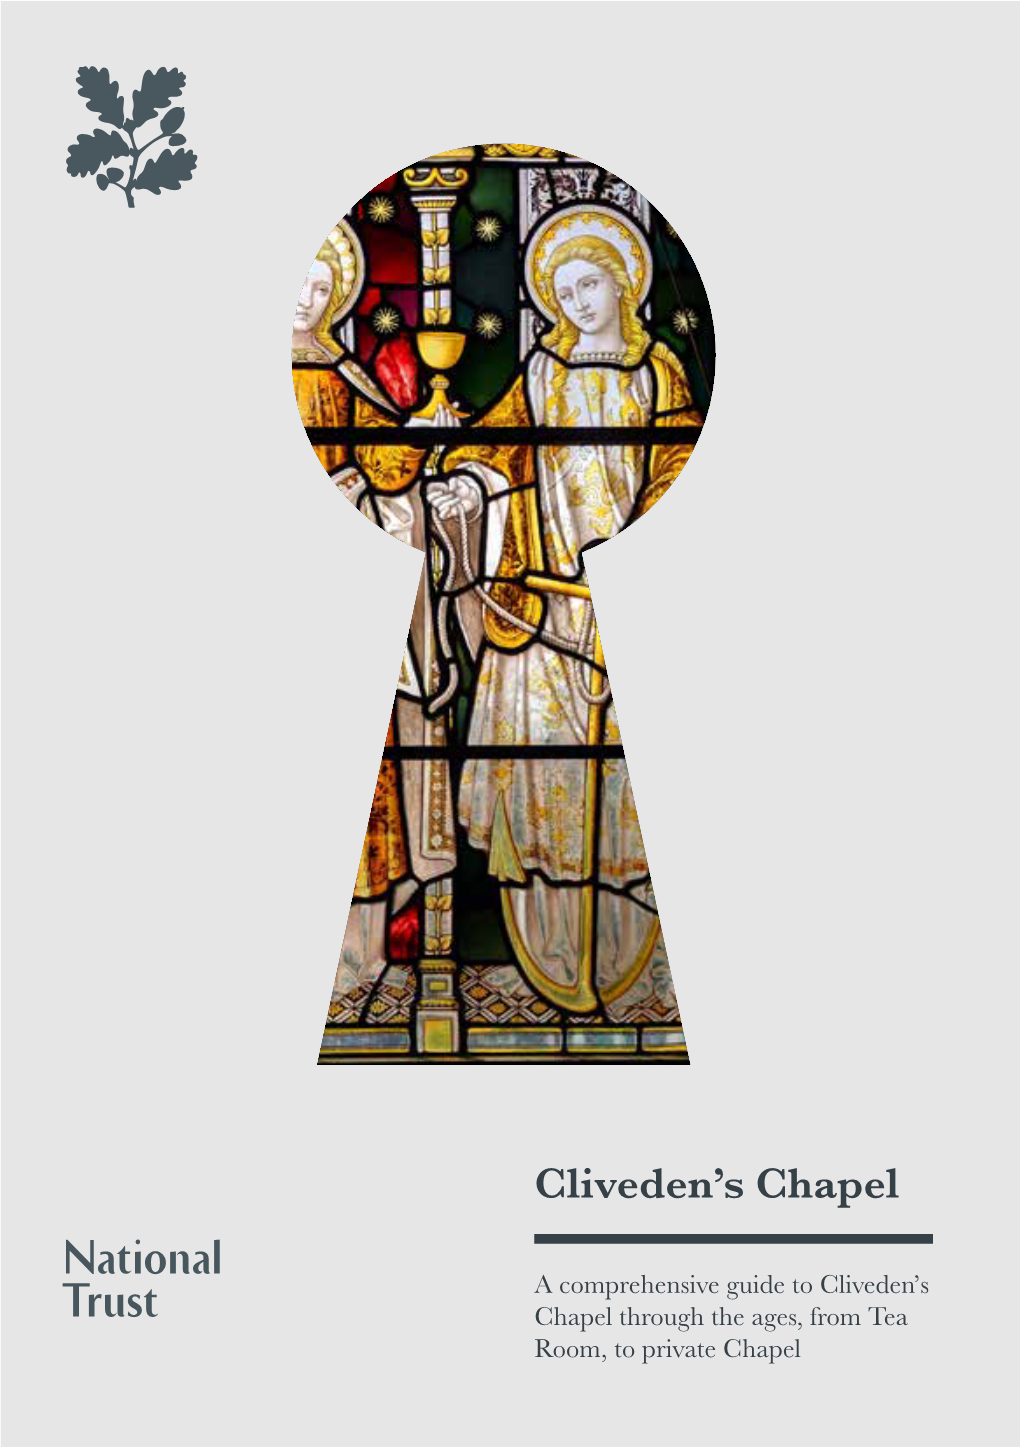 Cliveden's Chapel